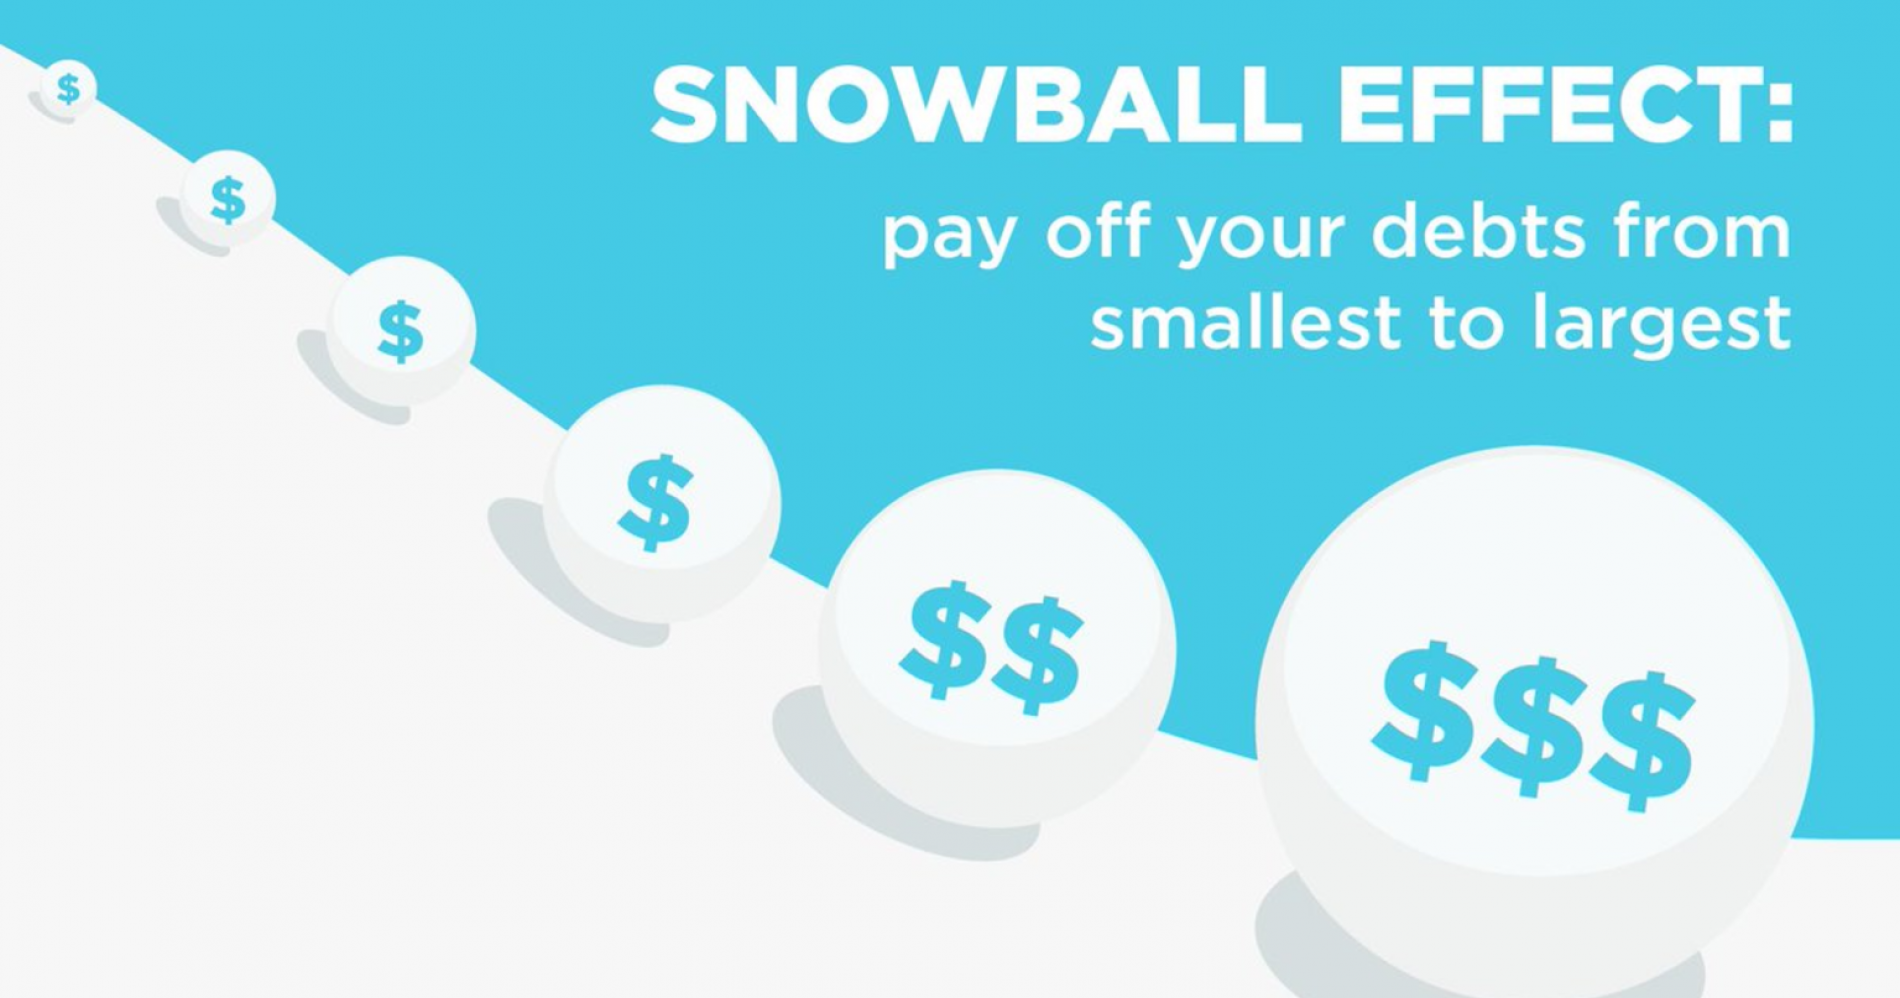 Tren Pinjaman online meningkat menjelang lebaran. Metode debt snowball bisa jadi cara untuk hindari utang berkepanjangan. (Sumber gambar: artofthinkingsmart.com)